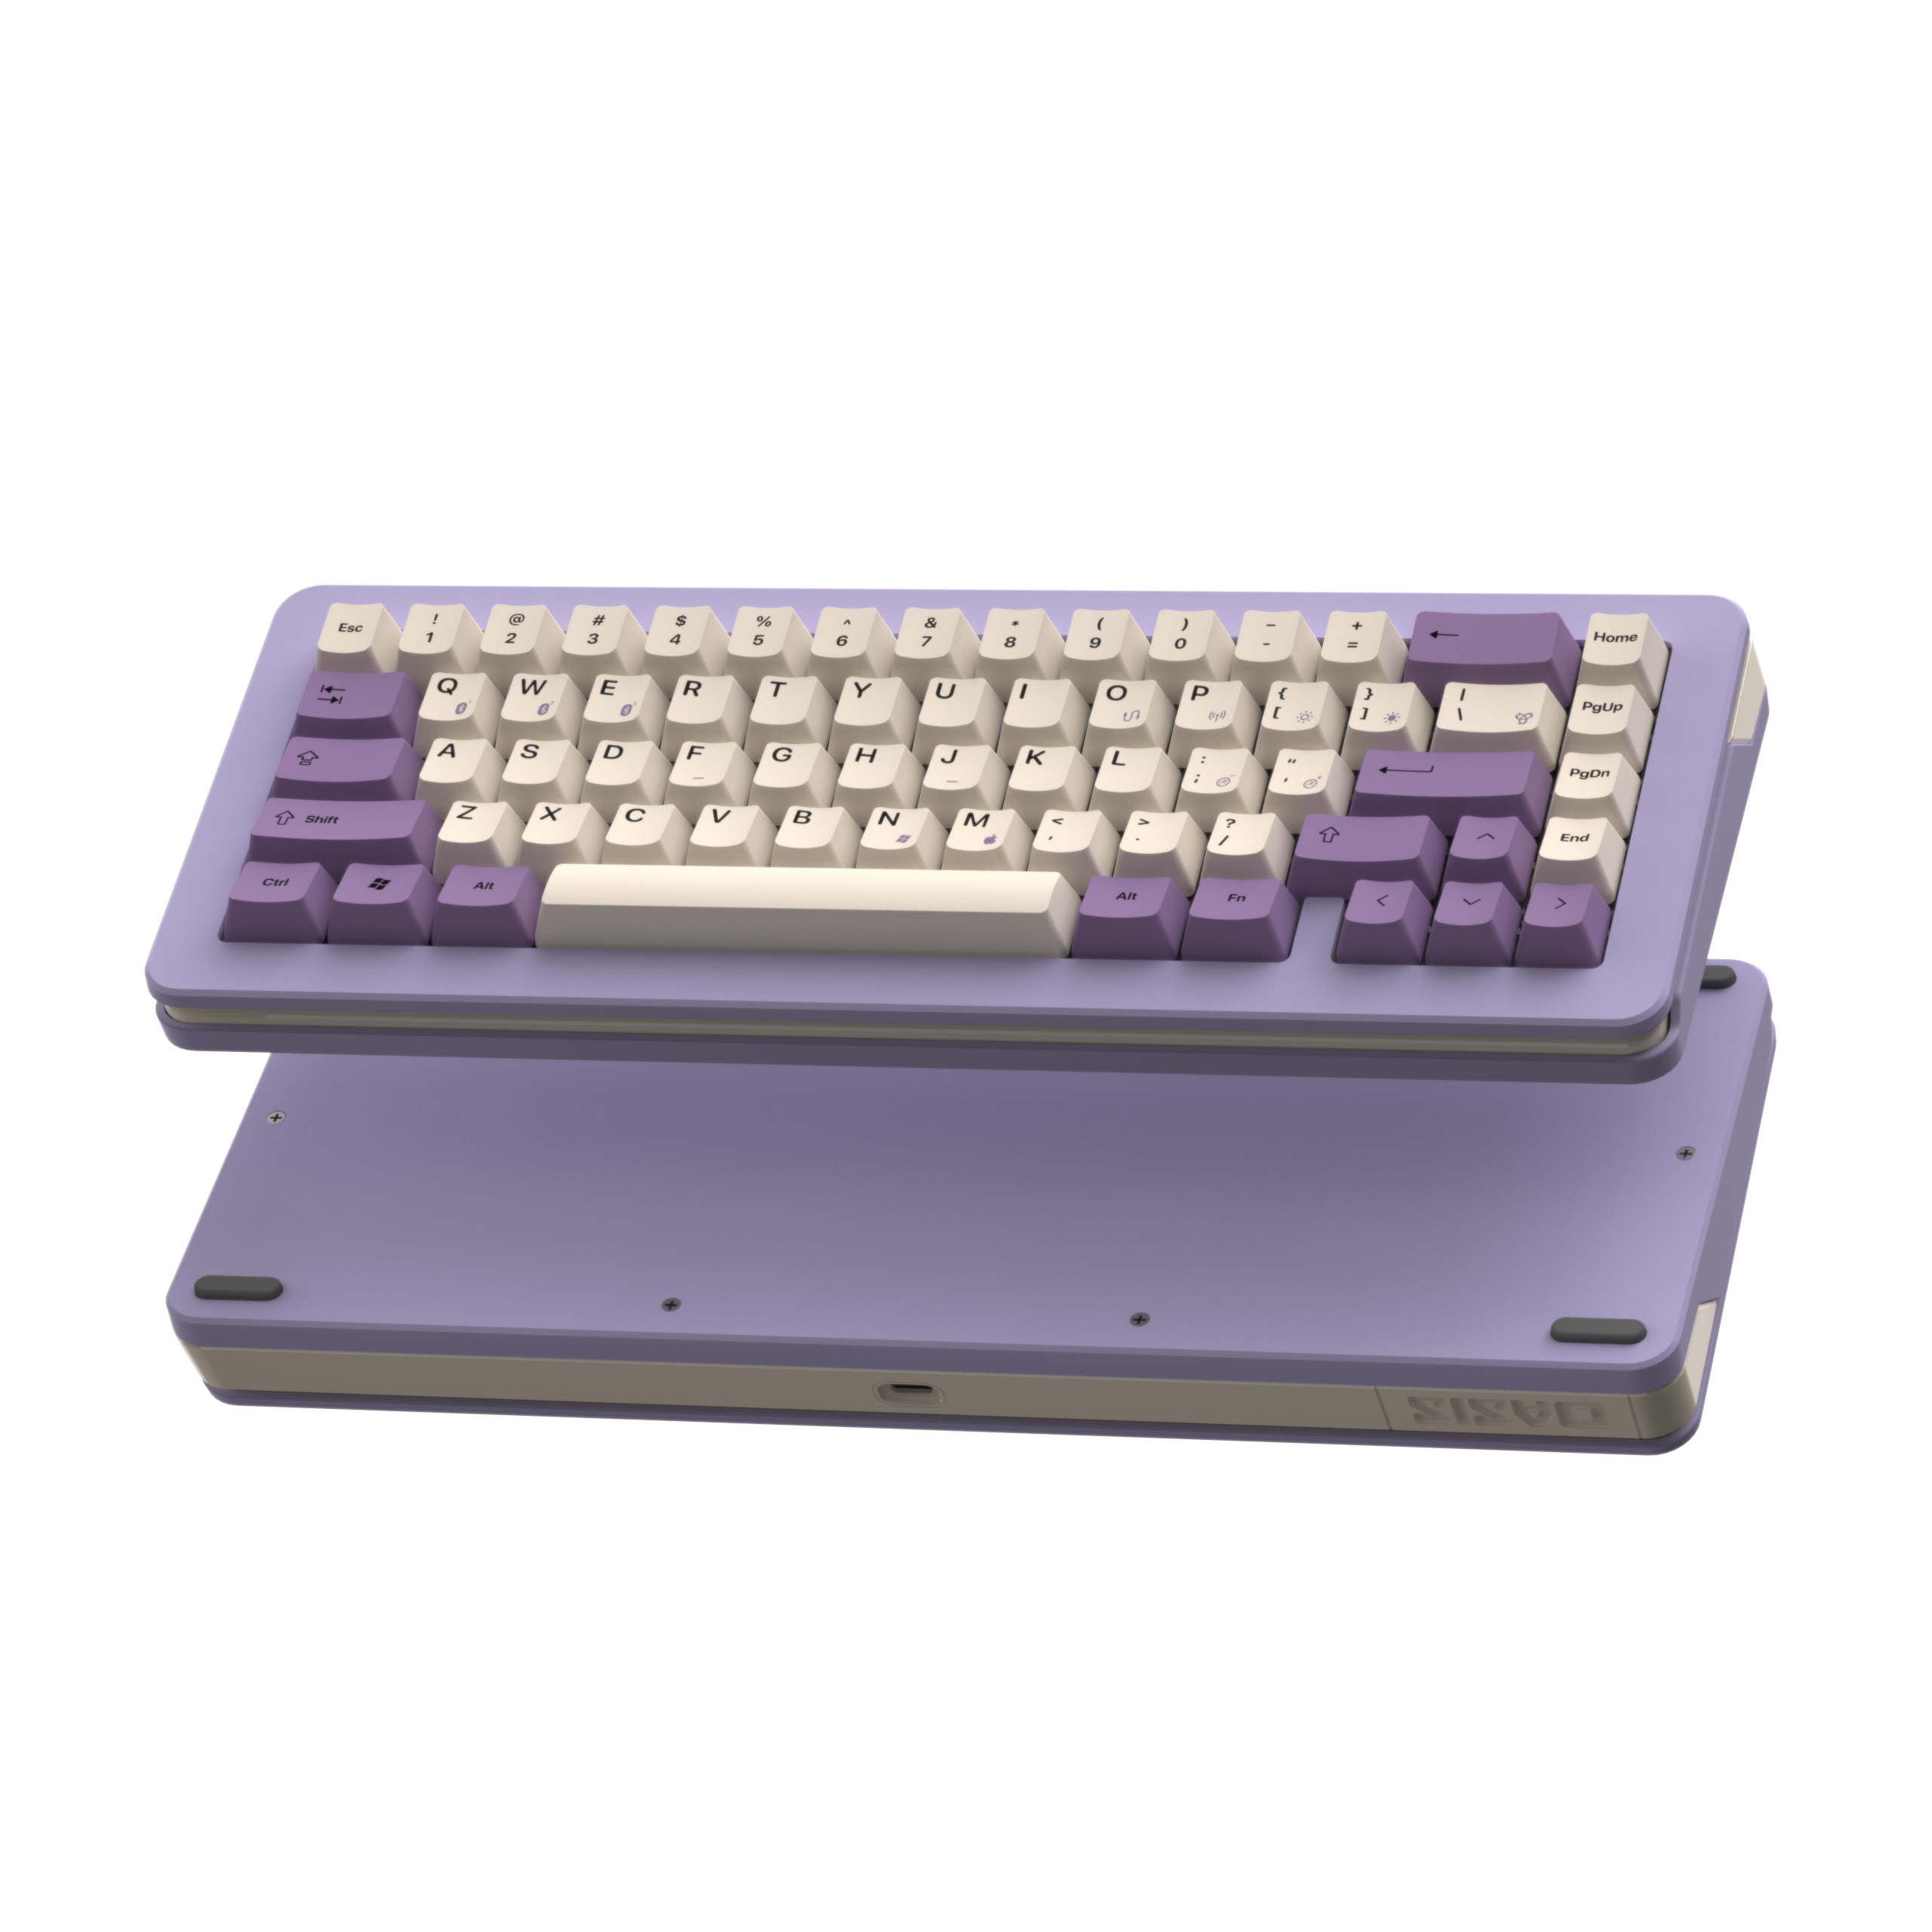 OASIS 65 Mechanical Keyboard